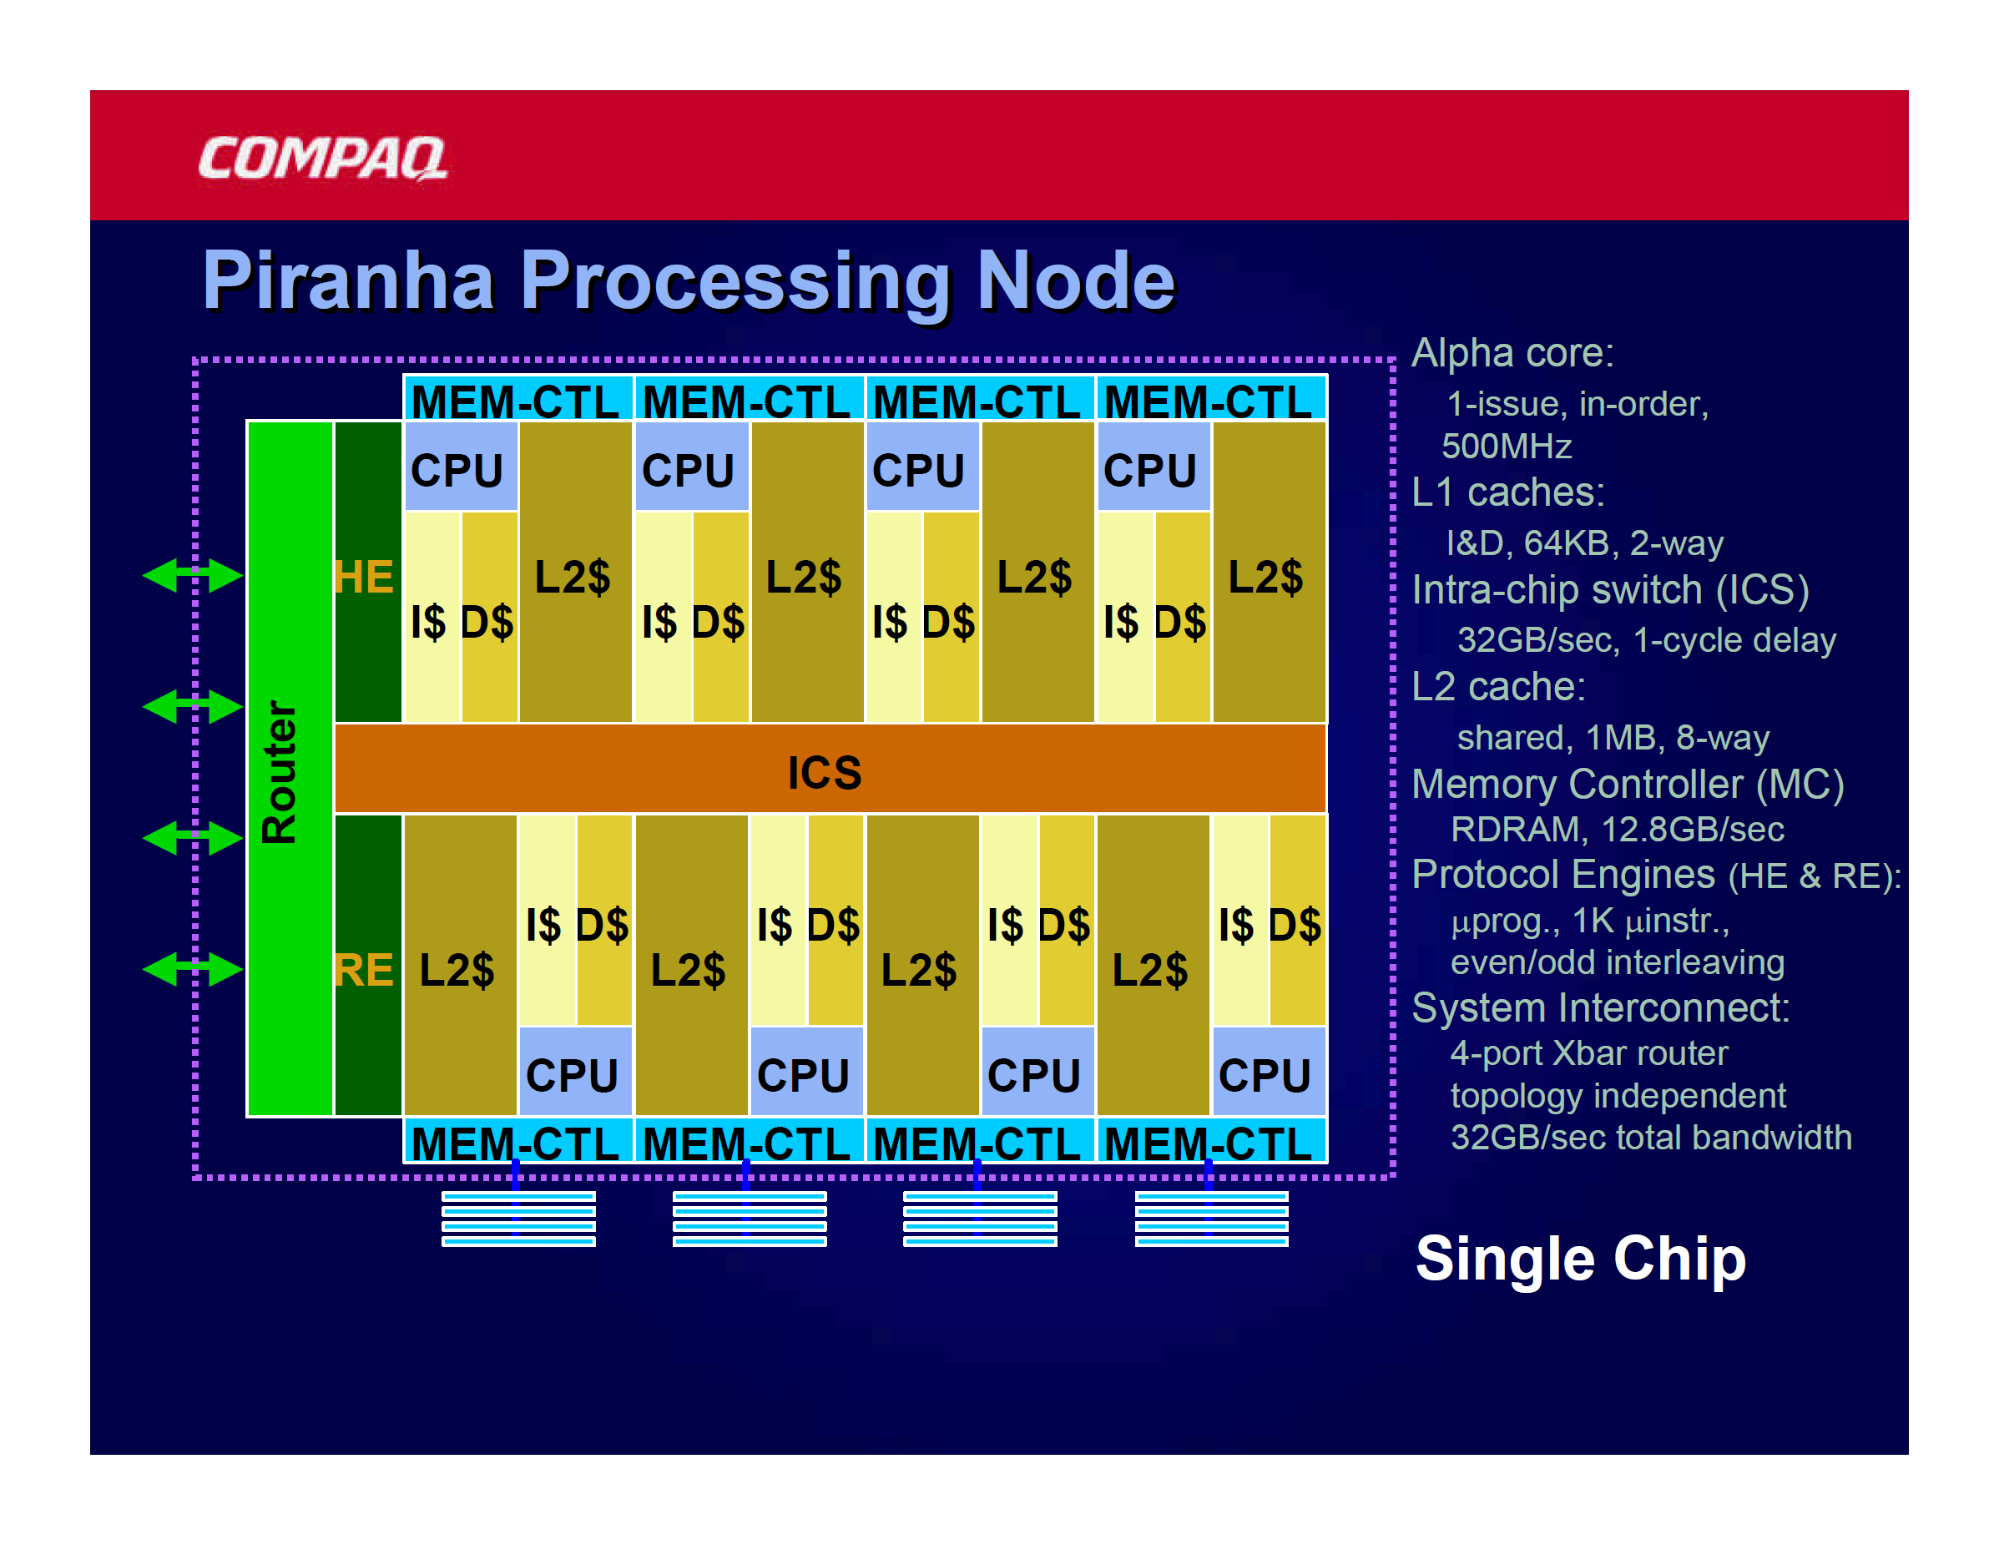 照片中提到了COMPAQ、Piranha Processing Node、-‒‒‒‒‒‒‒‒‒‒‒‒‒‒‒‒‒‒‒‒‒‒‒‒‒‒‒‒‒‒‒‒‒‒‒‒‒‒‒，跟康柏有關，包含了角度、中央處理器、英特爾、數碼設備公司、Advanced Micro Devices公司